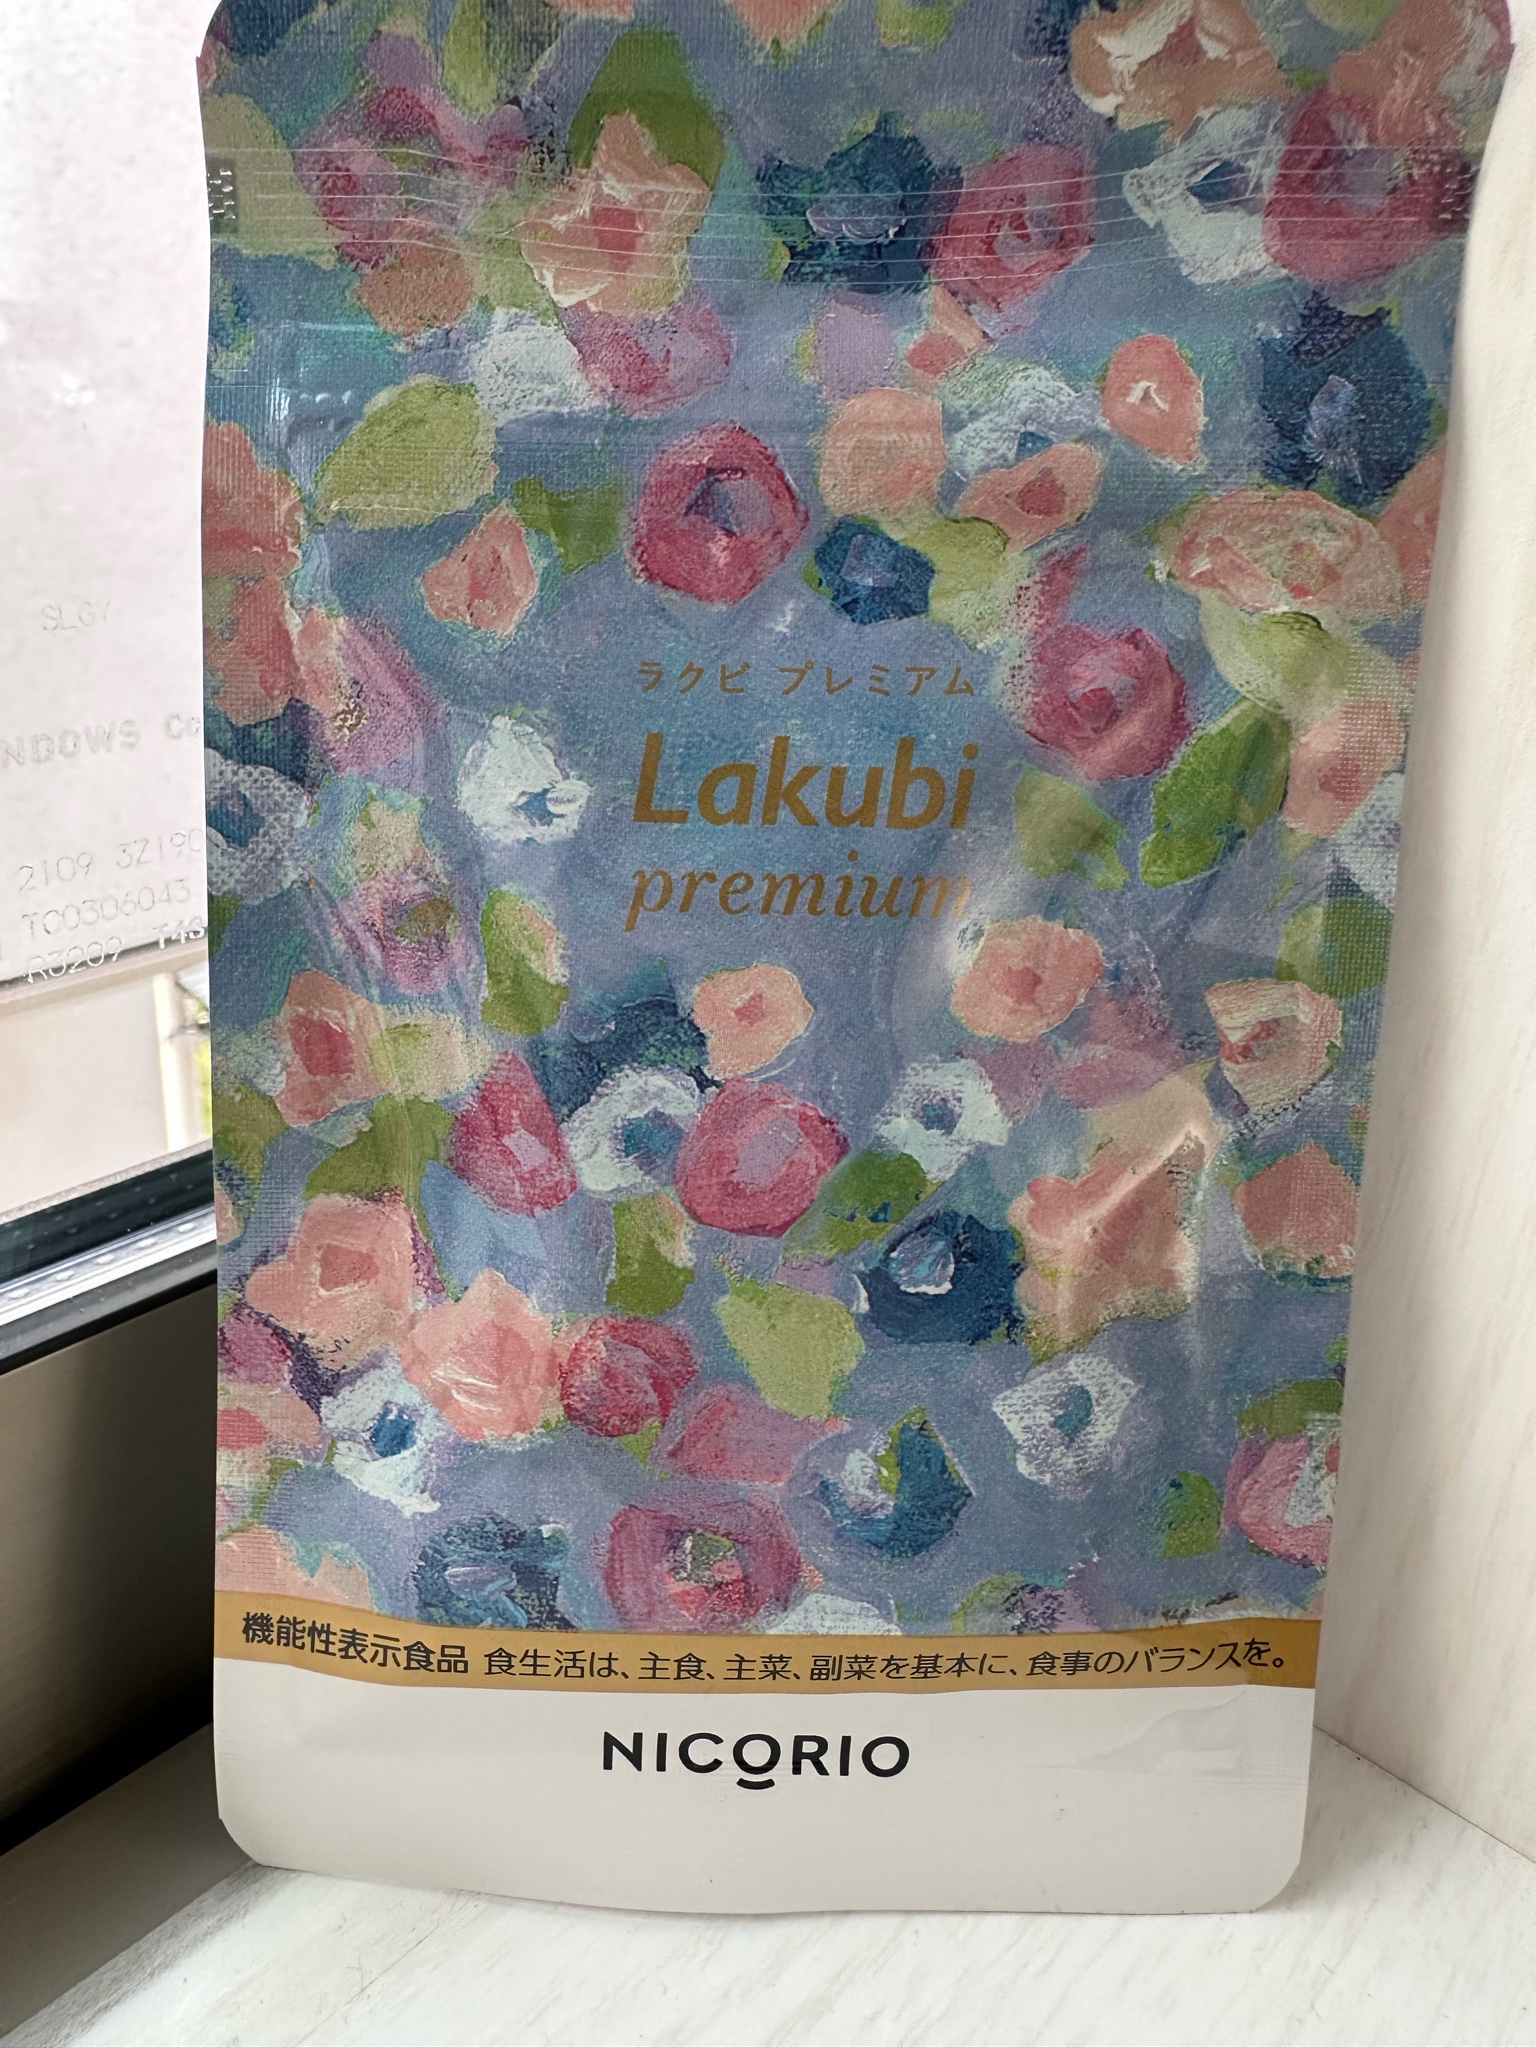 NICORIO（ニコリオ） / Lakubi premium(ラクビプレミアム)の口コミ写真 ...